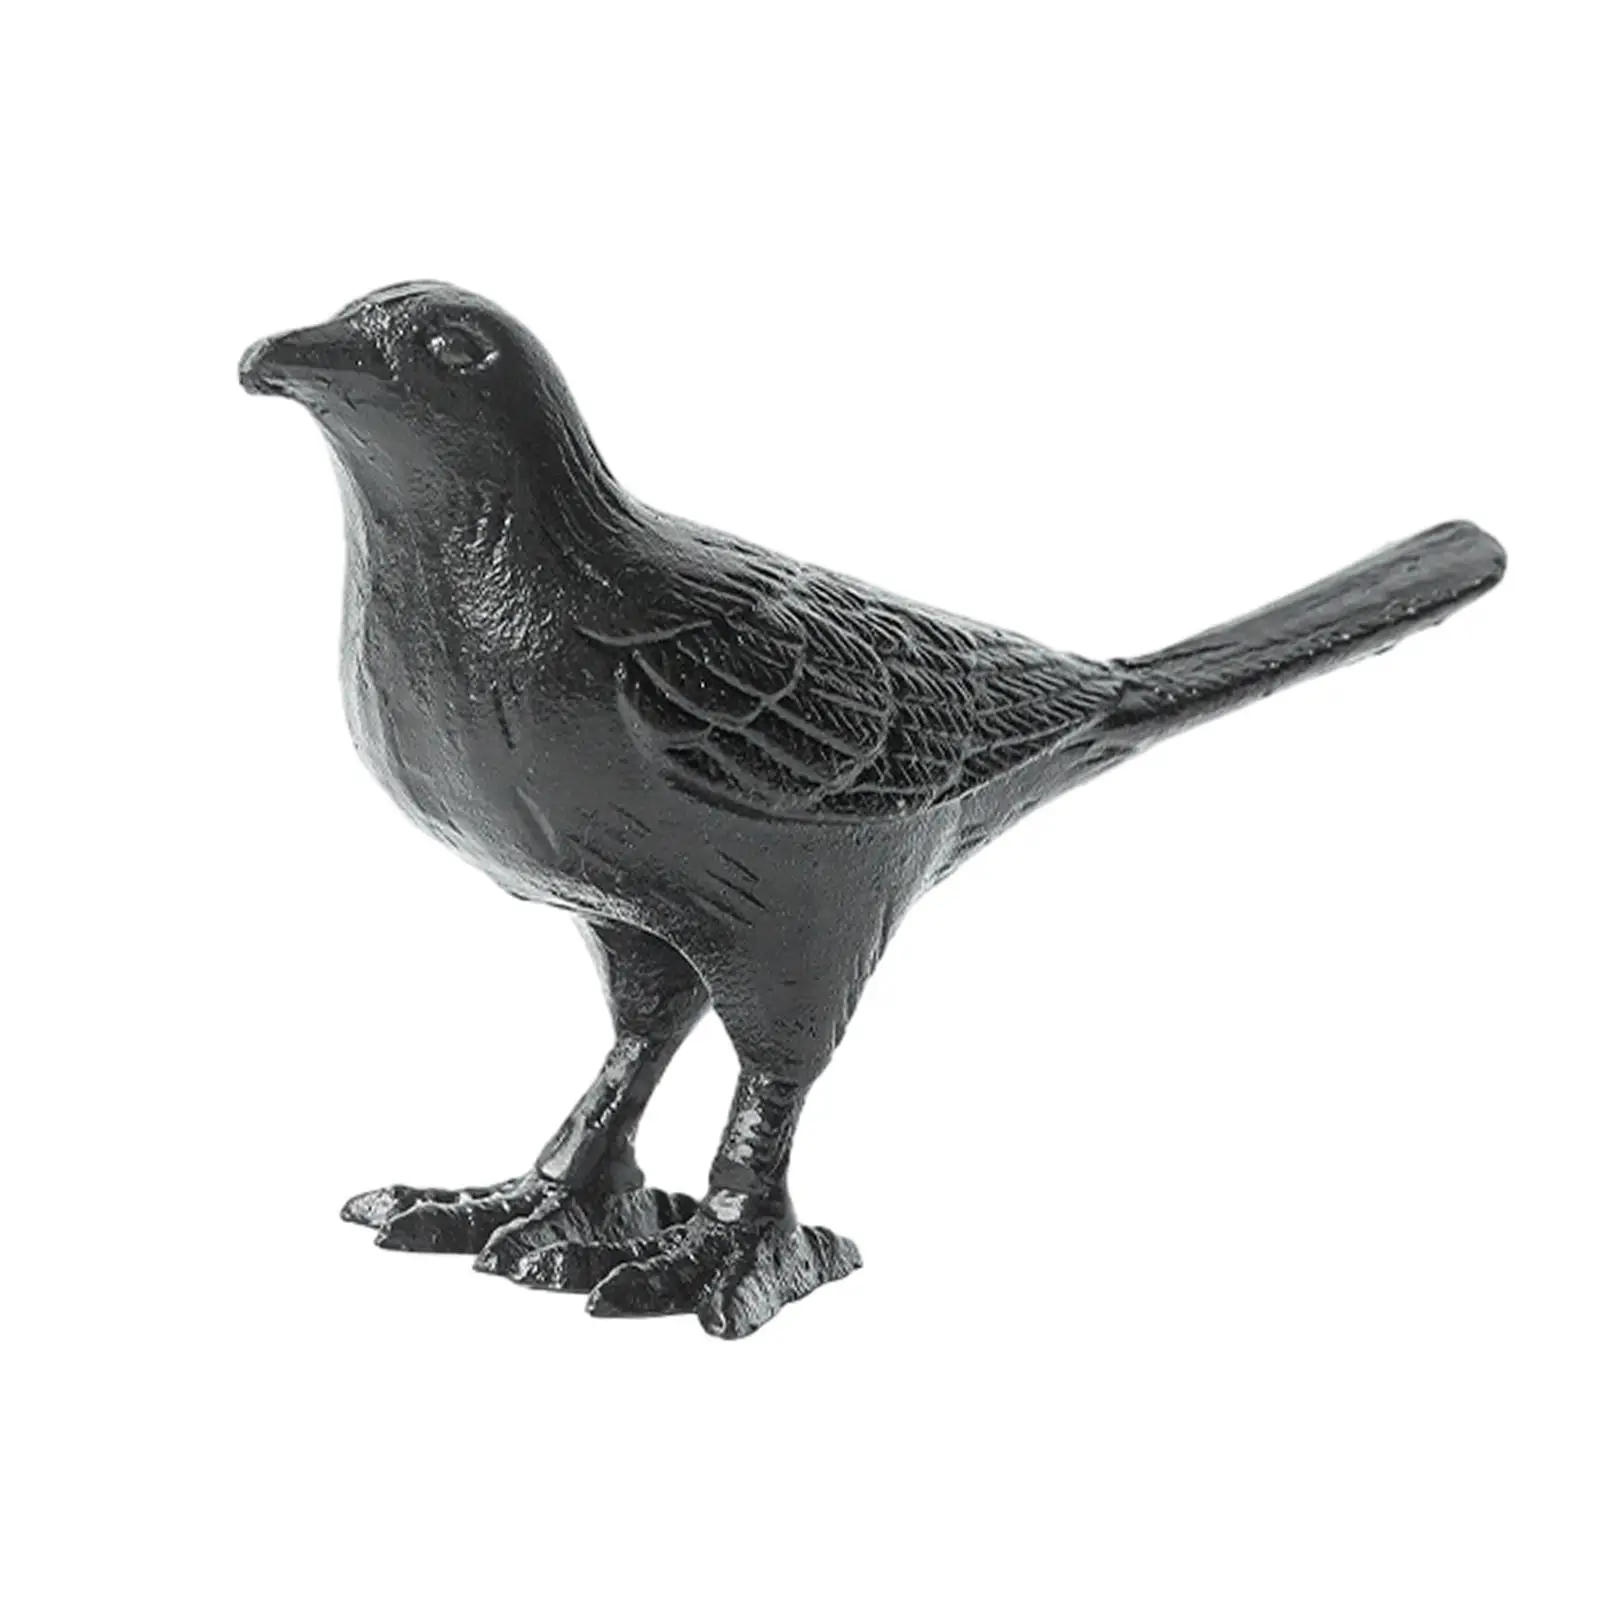 Bird Figurine Bird Sculpture Vintage Style Artwork Modern Decorative Crafts Bird Statue for Office Home Bookcase Decor Gift